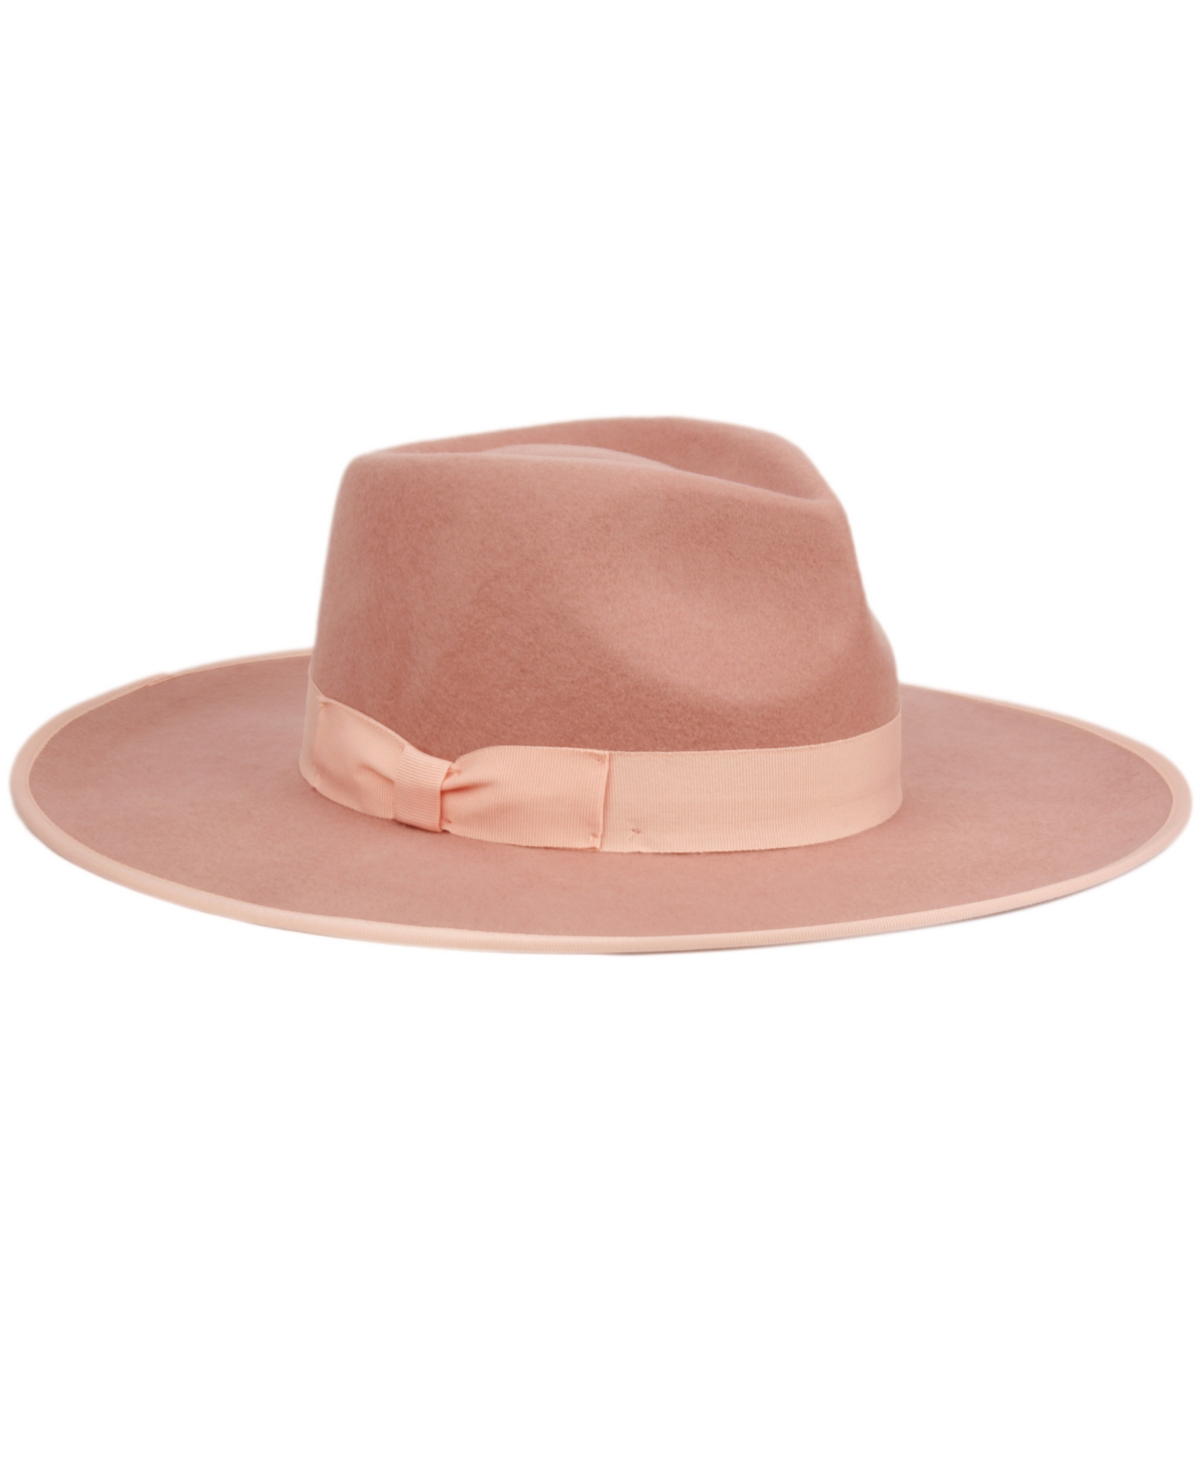 Angela & William Women's Wide Brim Felt Rancher Fedora Hat In Indi Pink